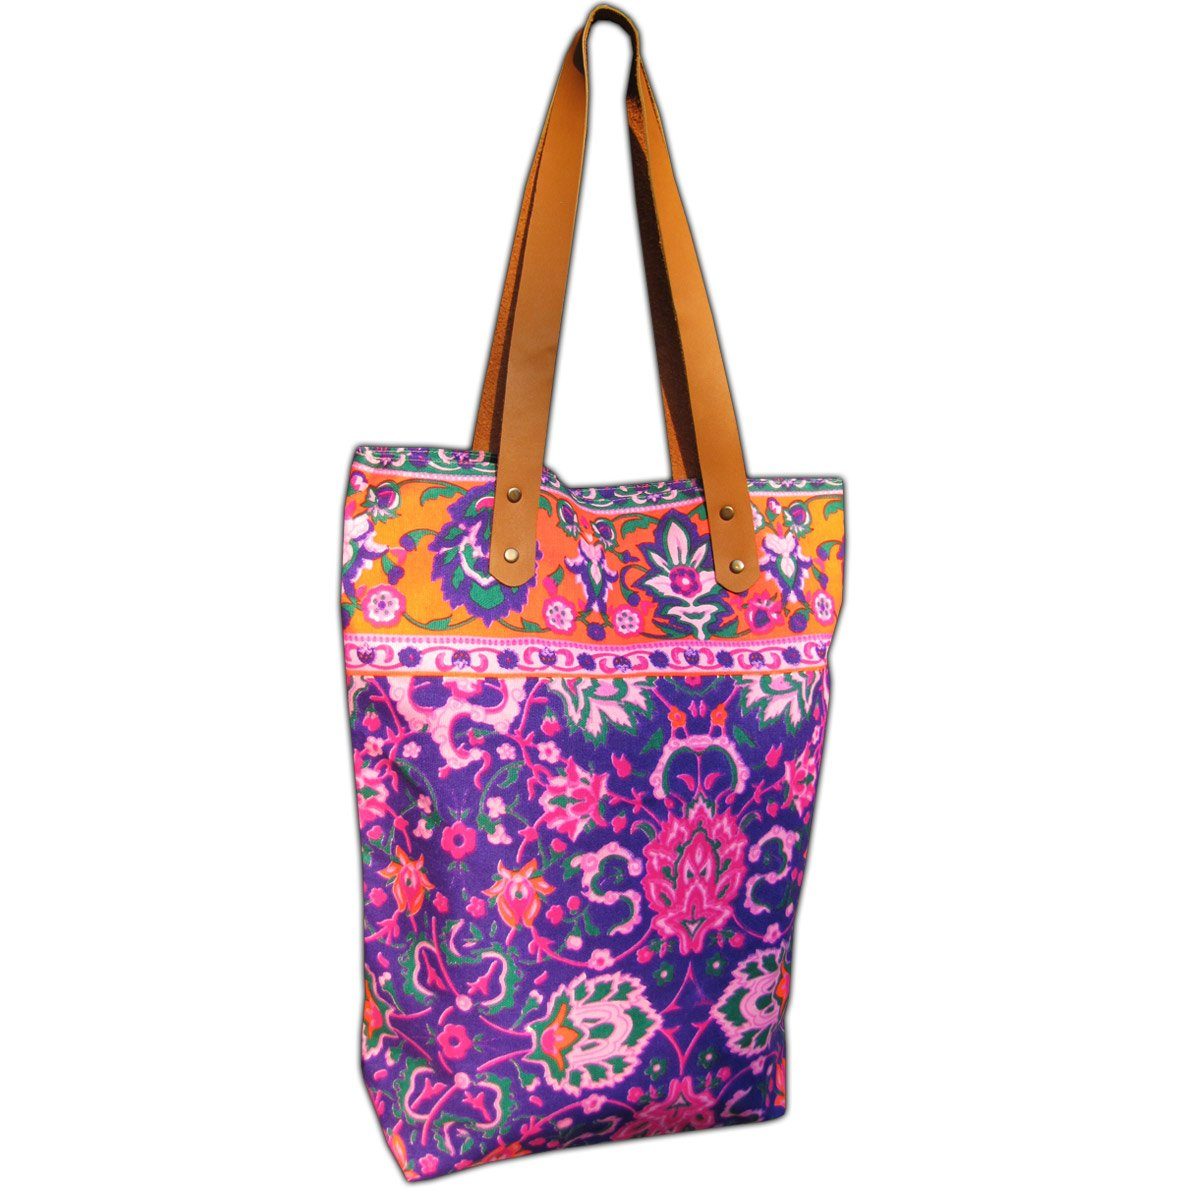 PANASIAM Freizeittasche Neonbunte Schultertasche aus festem Canvas auch als Einkaufstasche, Strandtasche oder Wickeltasche ideal Henkel aus veganem Kunstleder Lila